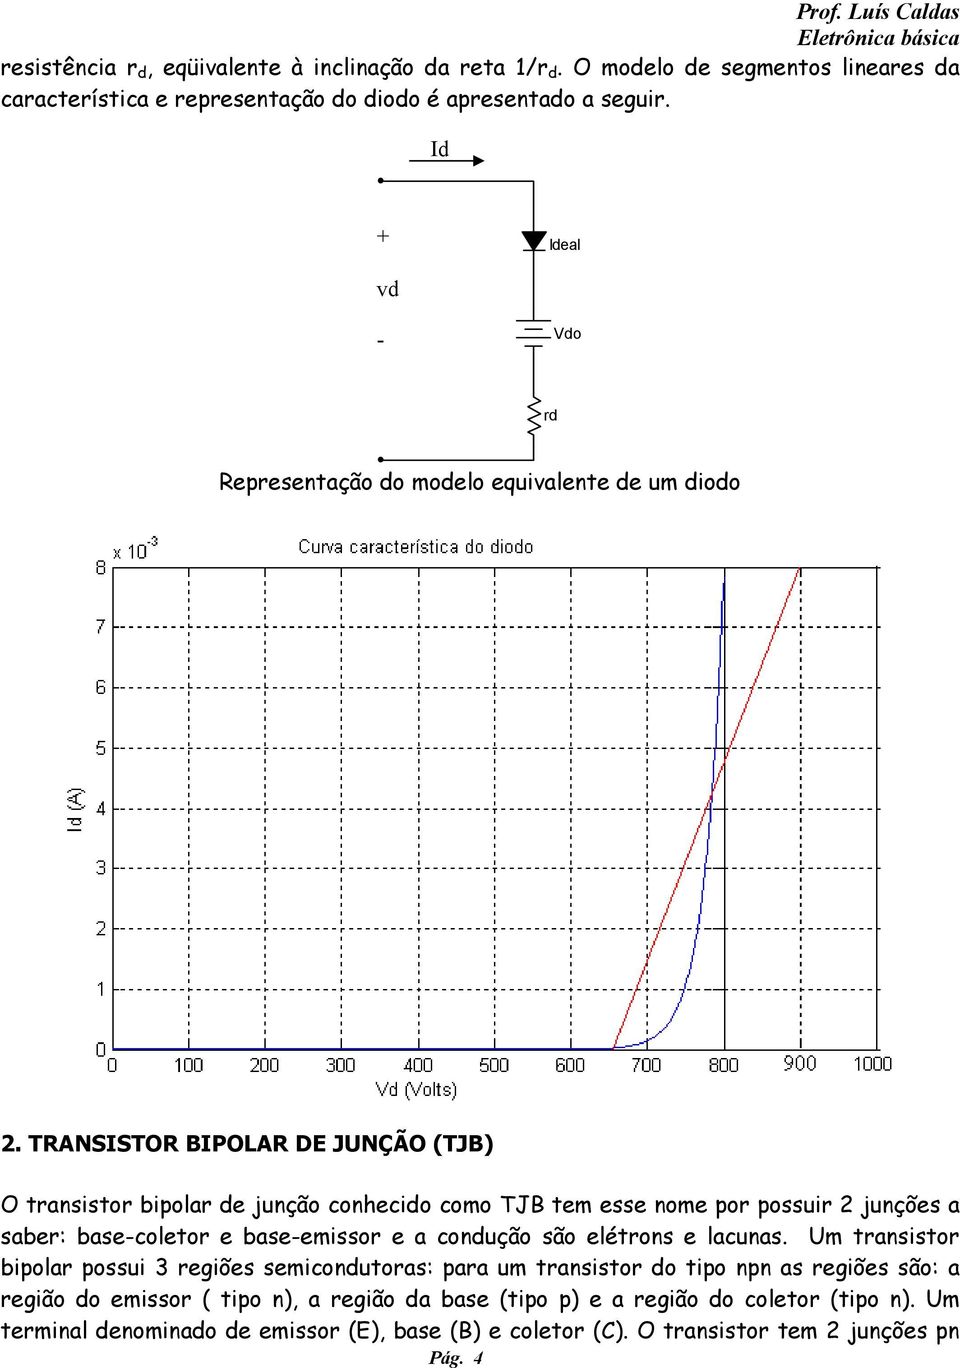 TRANSISTOR BIPOLAR DE JUNÇÃO (TJB) O transistor bipolar de junção conhecido como TJB tem esse nome por possuir 2 junções a saber: base-coletor e base-emissor e a condução são